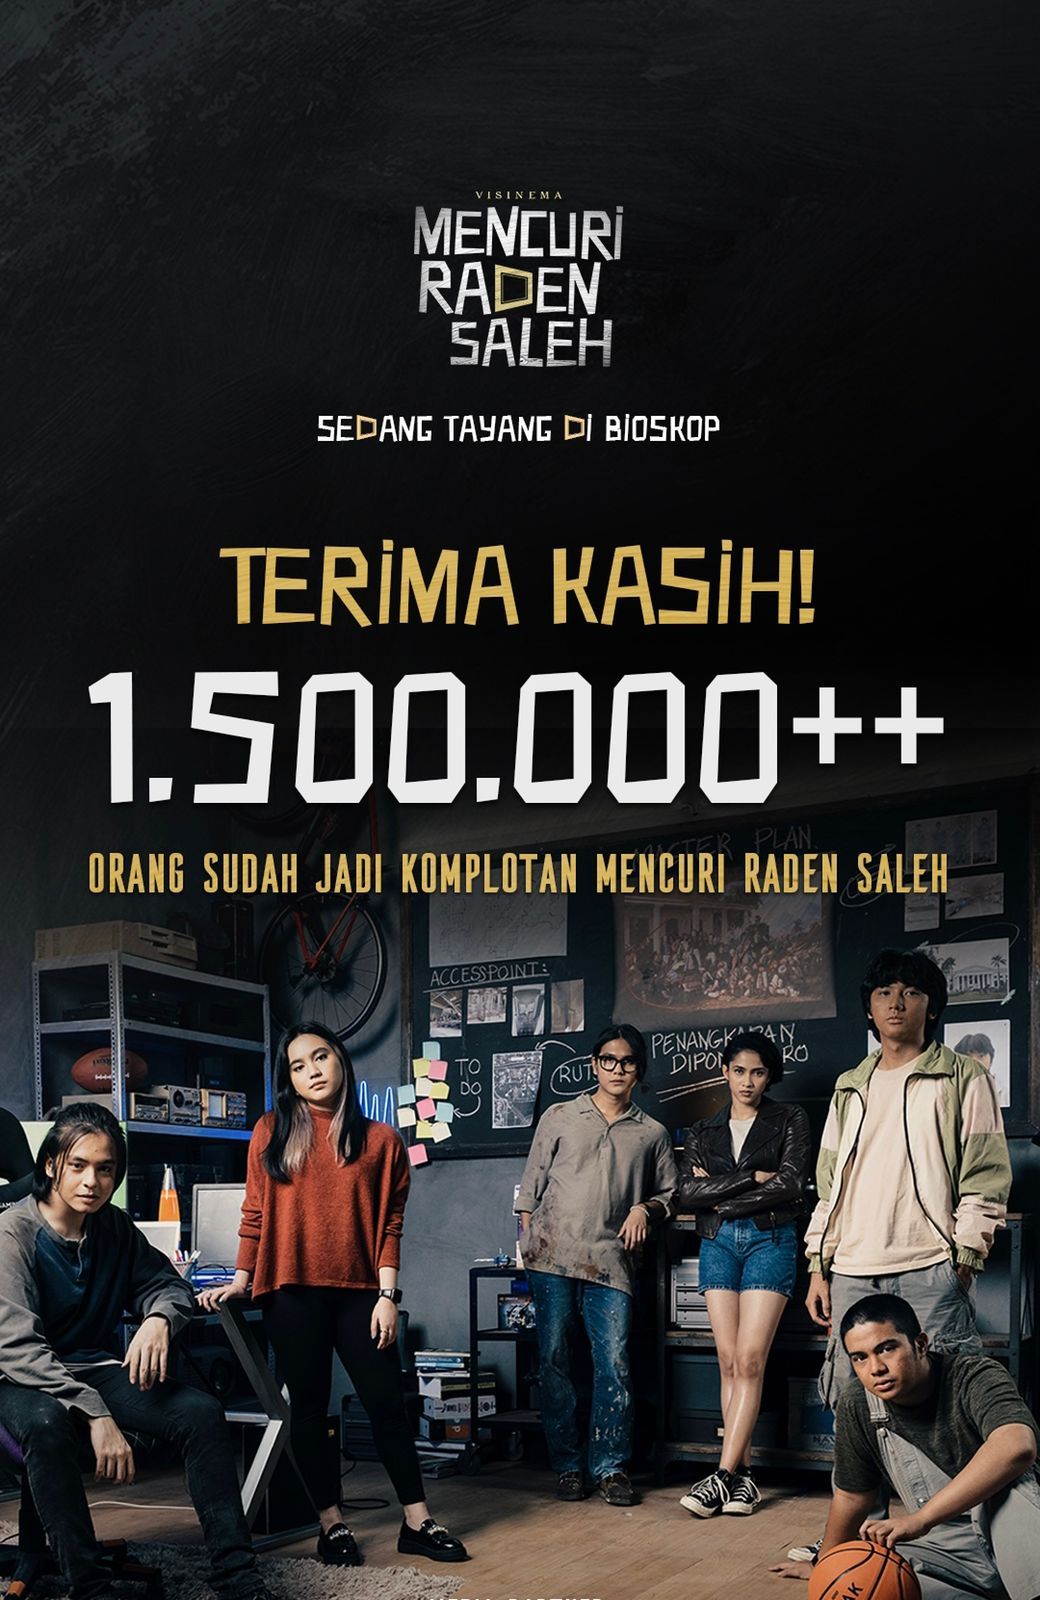 Film Mencuri Raden Saleh tembus 1,5 juta penonton.